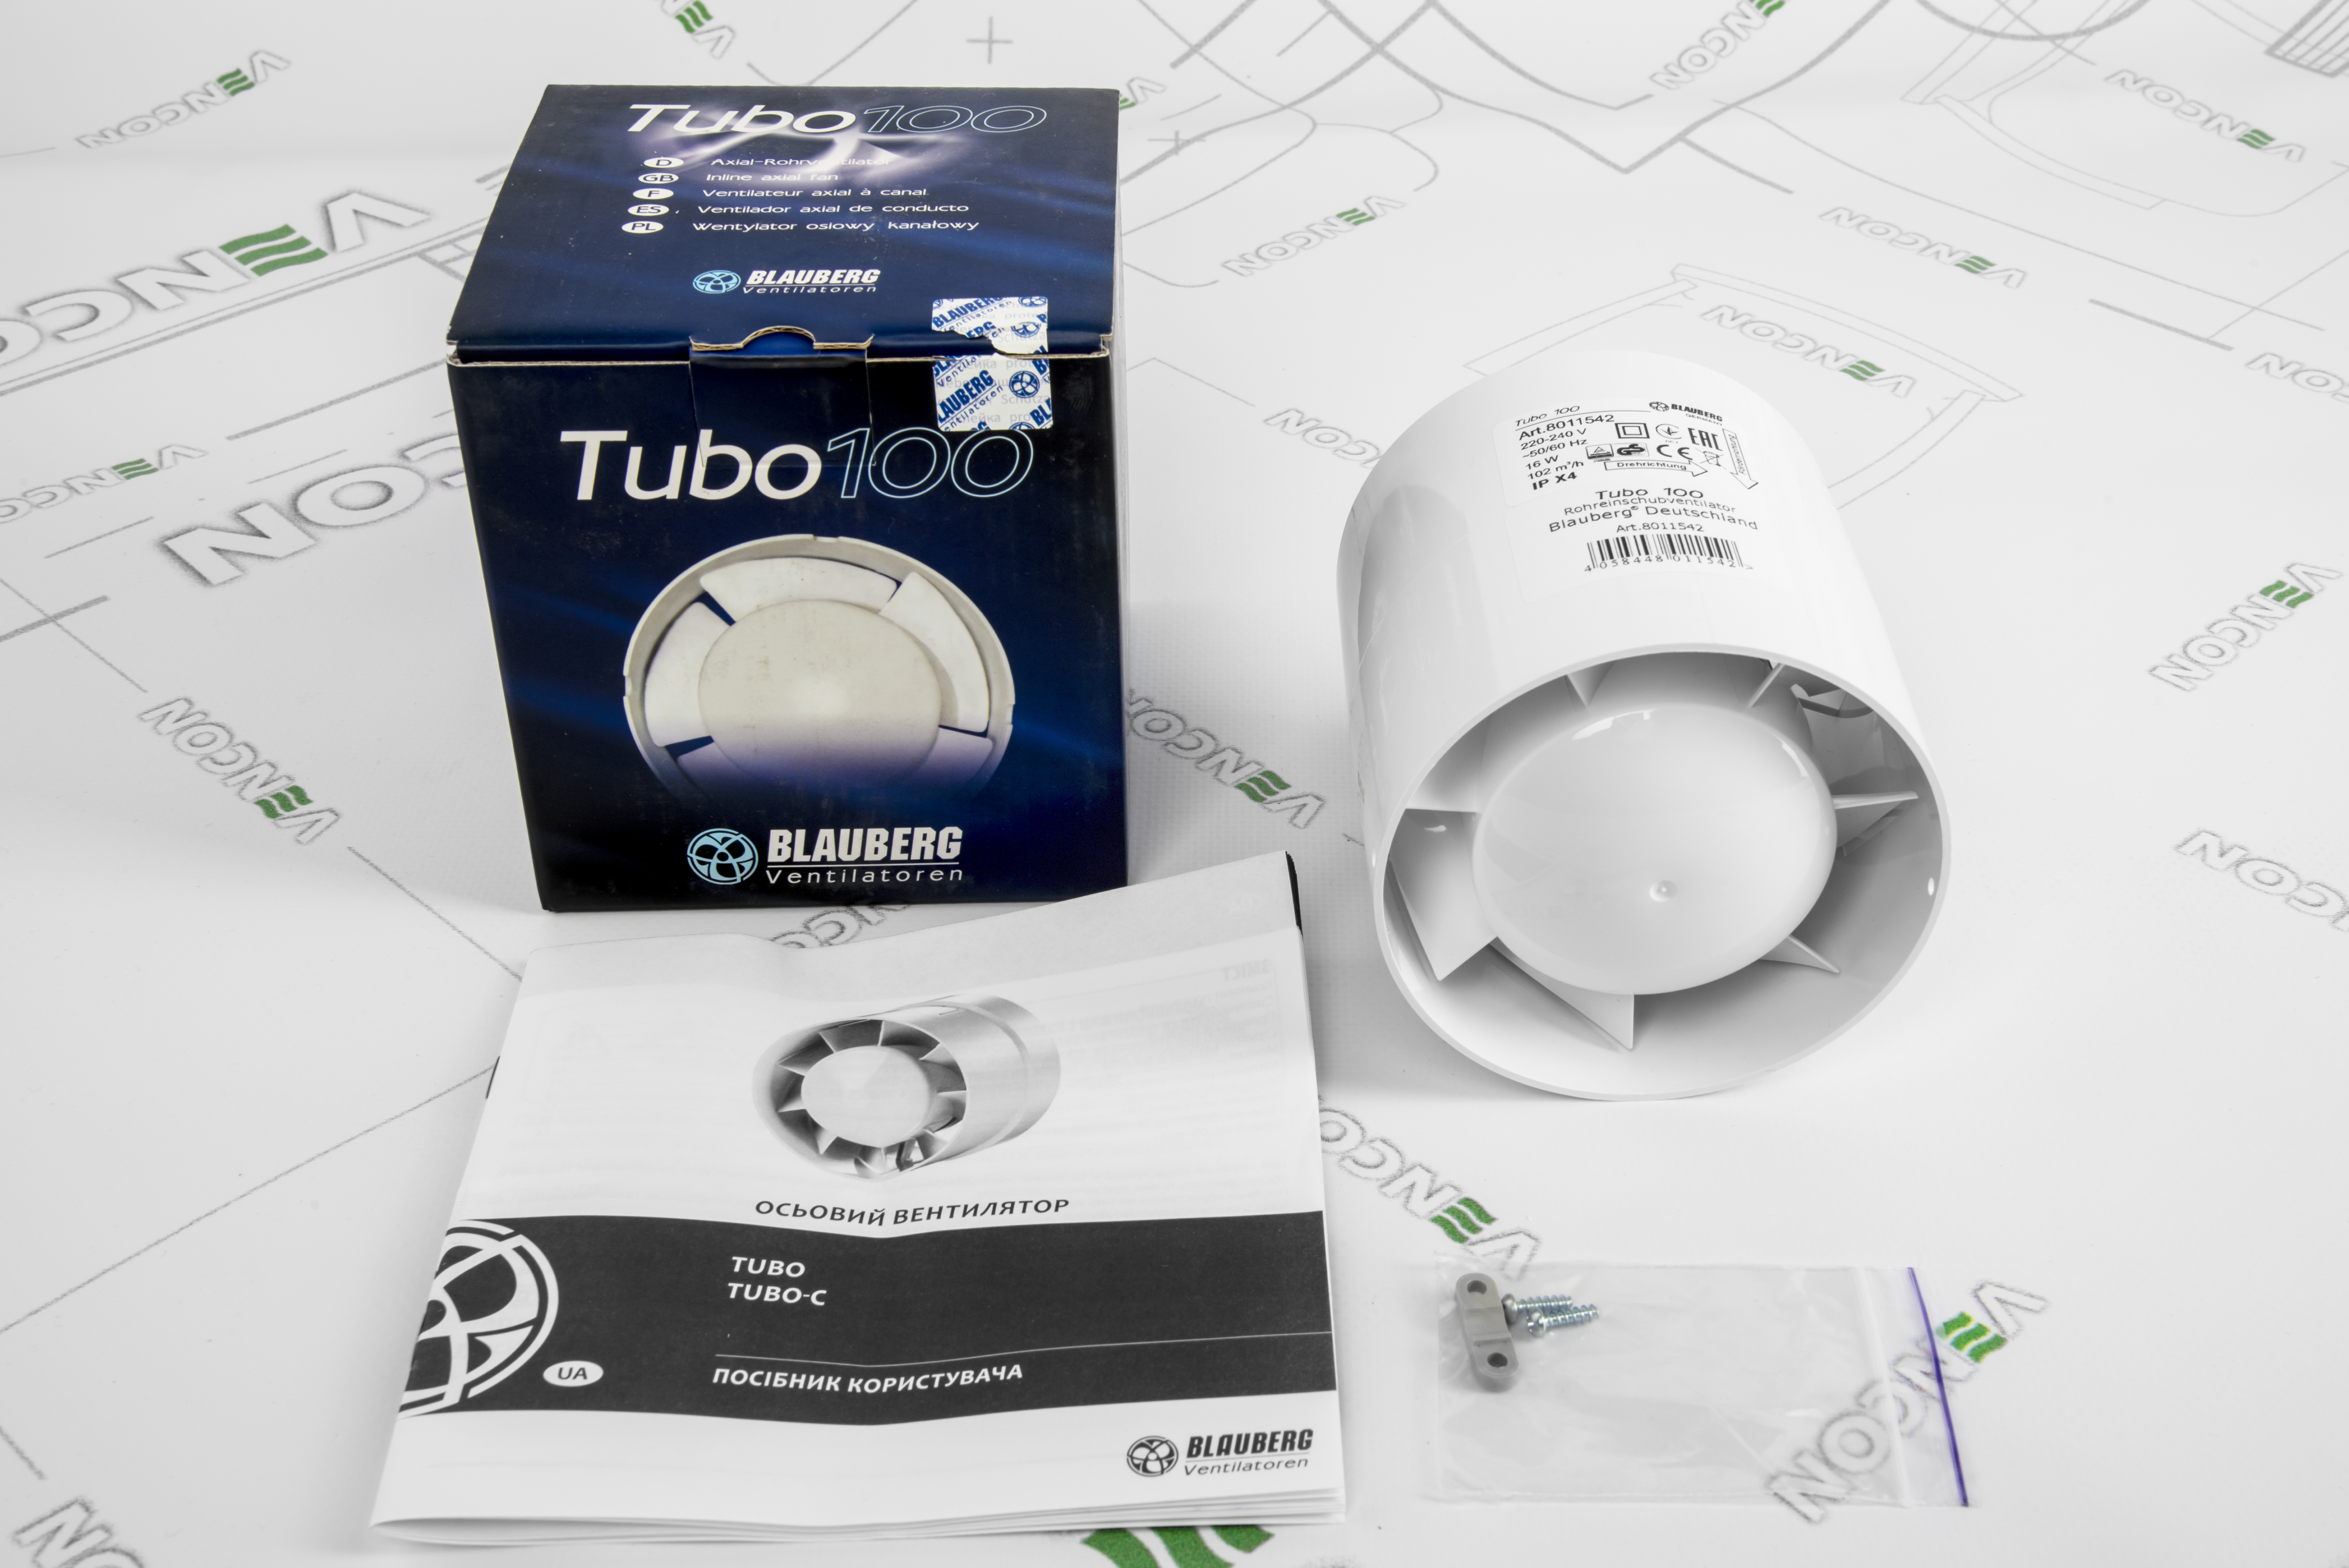 Канальний вентилятор Blauberg Tubo 100 характеристики - фотографія 7